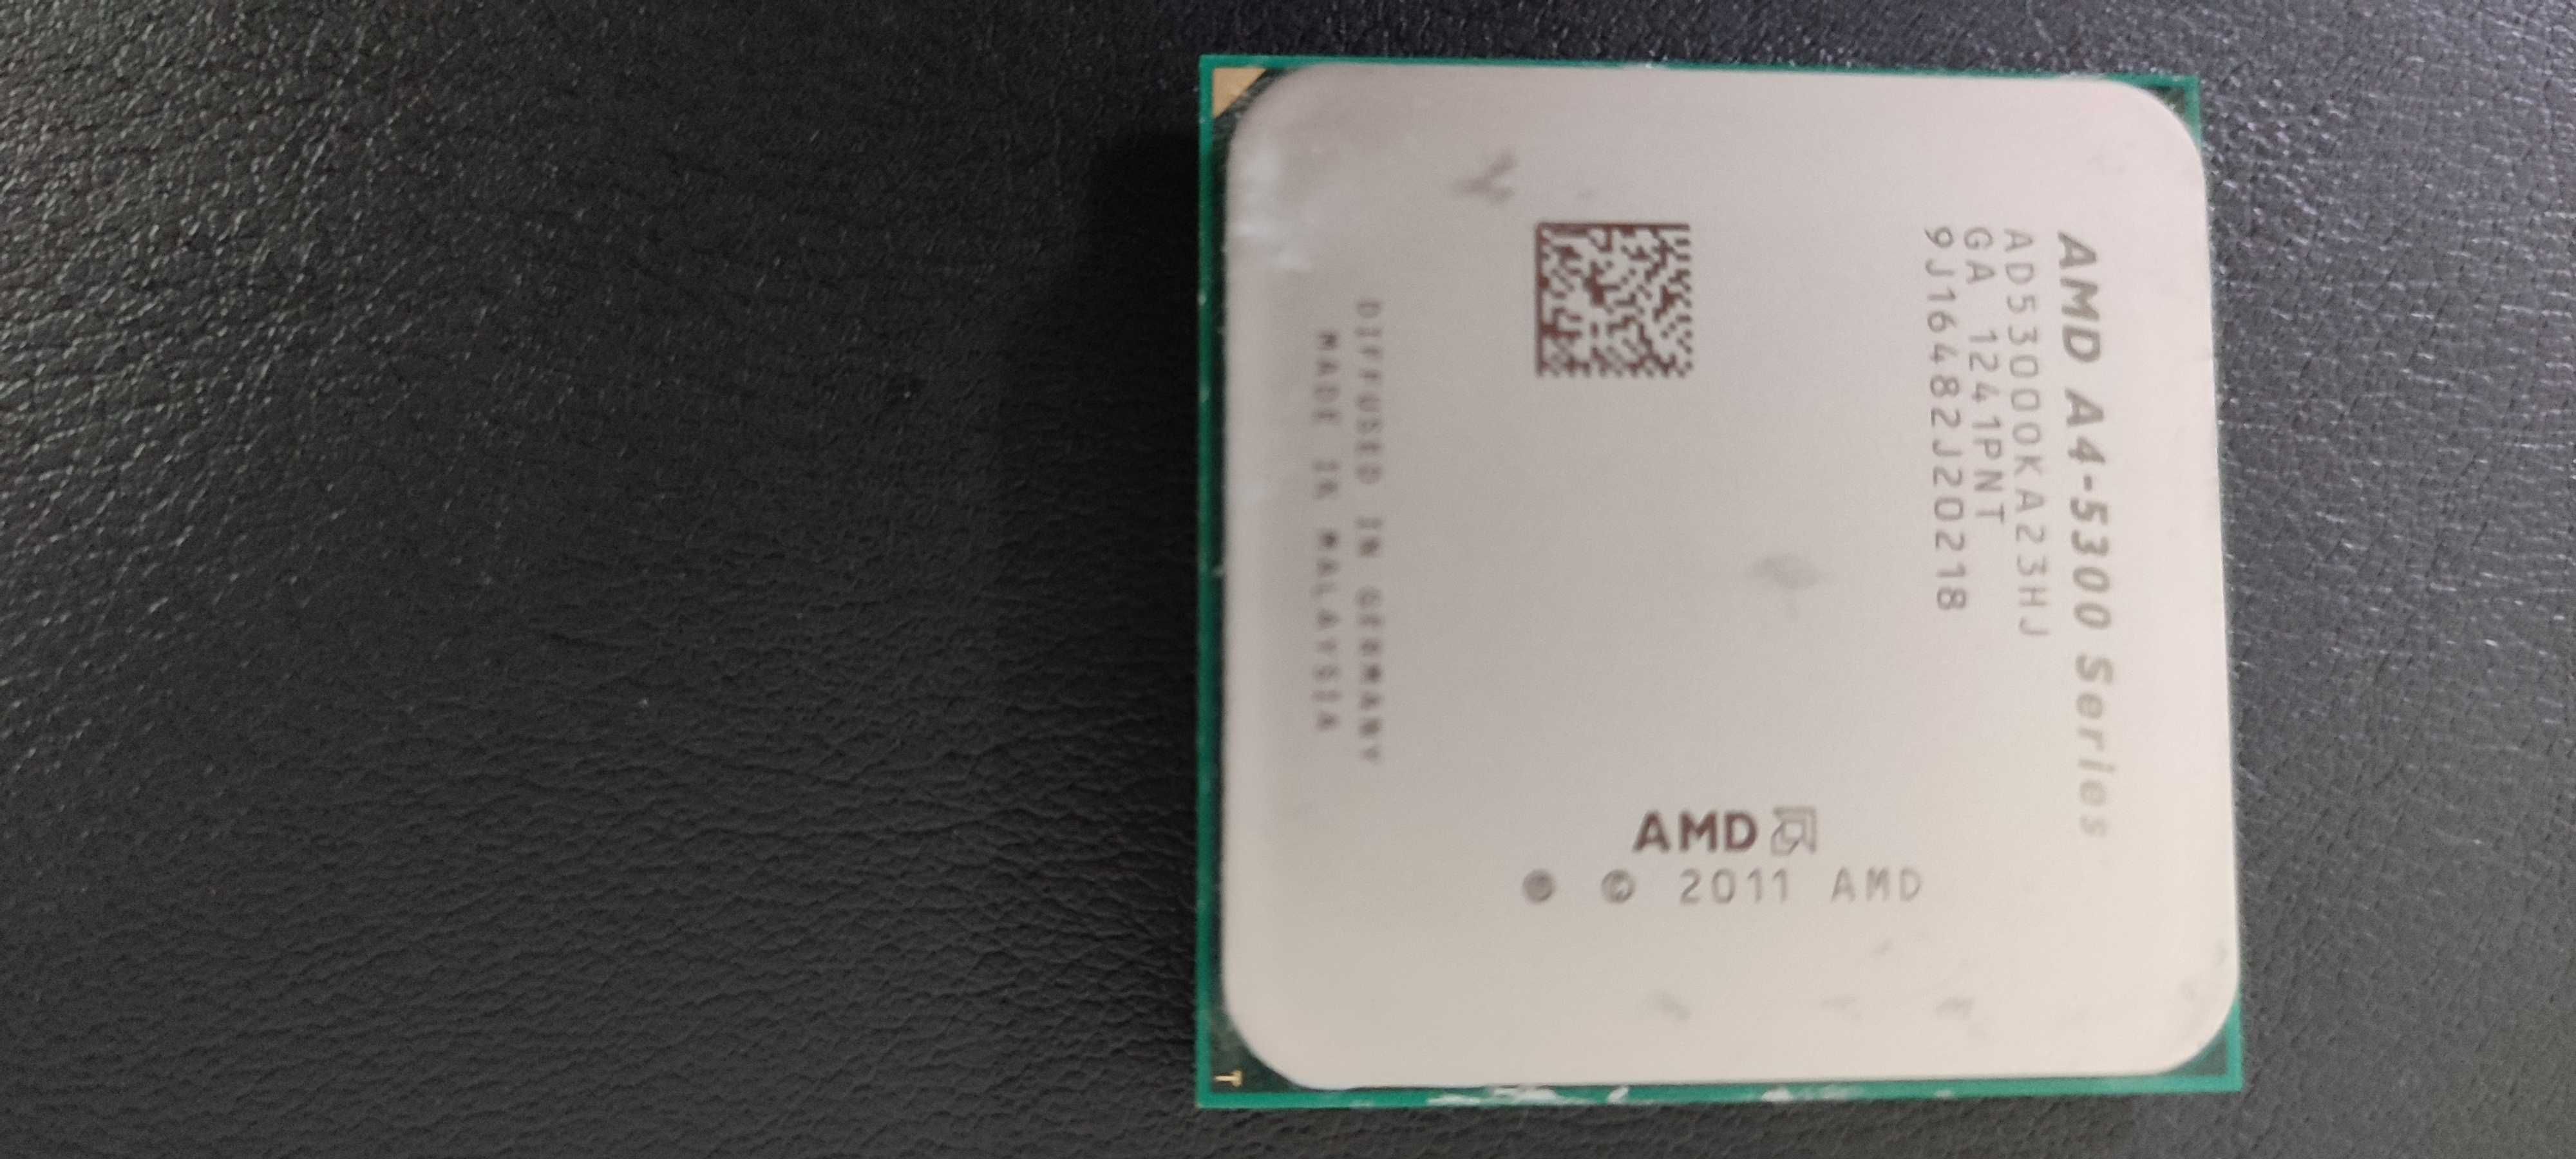 Bundle AMD a4-5300 series/ASROCK dual graphics fm2a55m-dgs